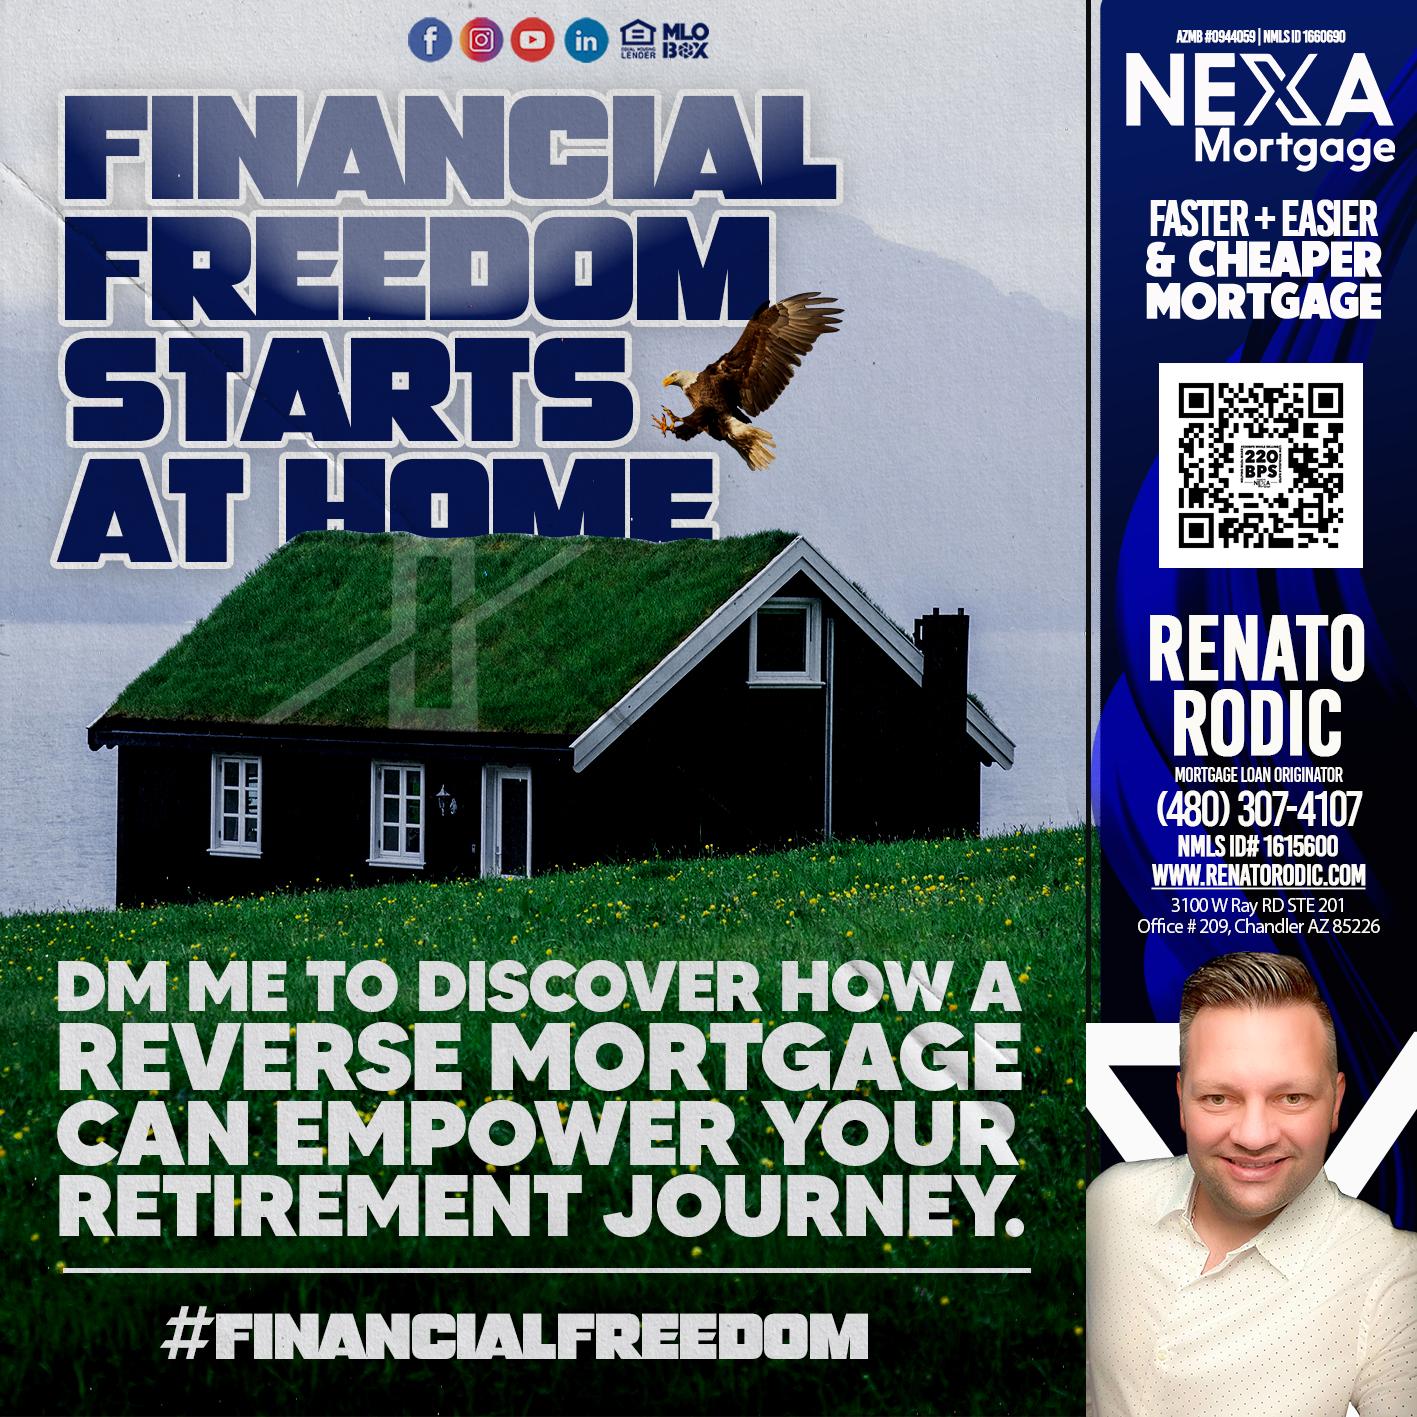 FINANCIAL FREEDOM - Renato Rodic -Mortgage Loan Originator